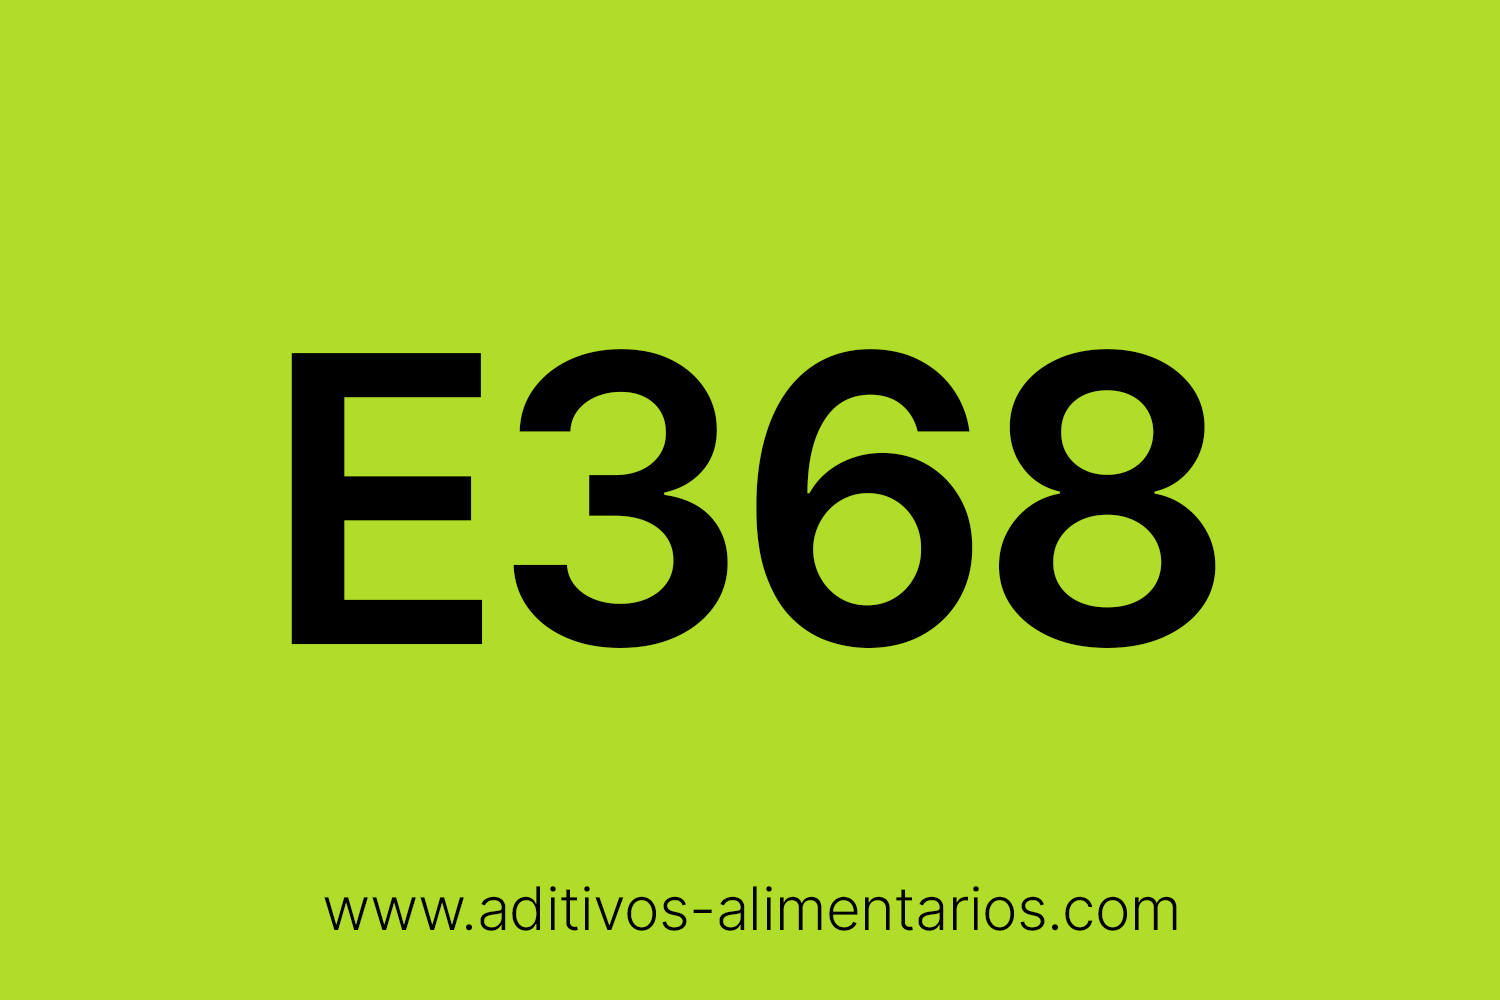 Aditivo Alimentario - E368 - Fumarato Amónico